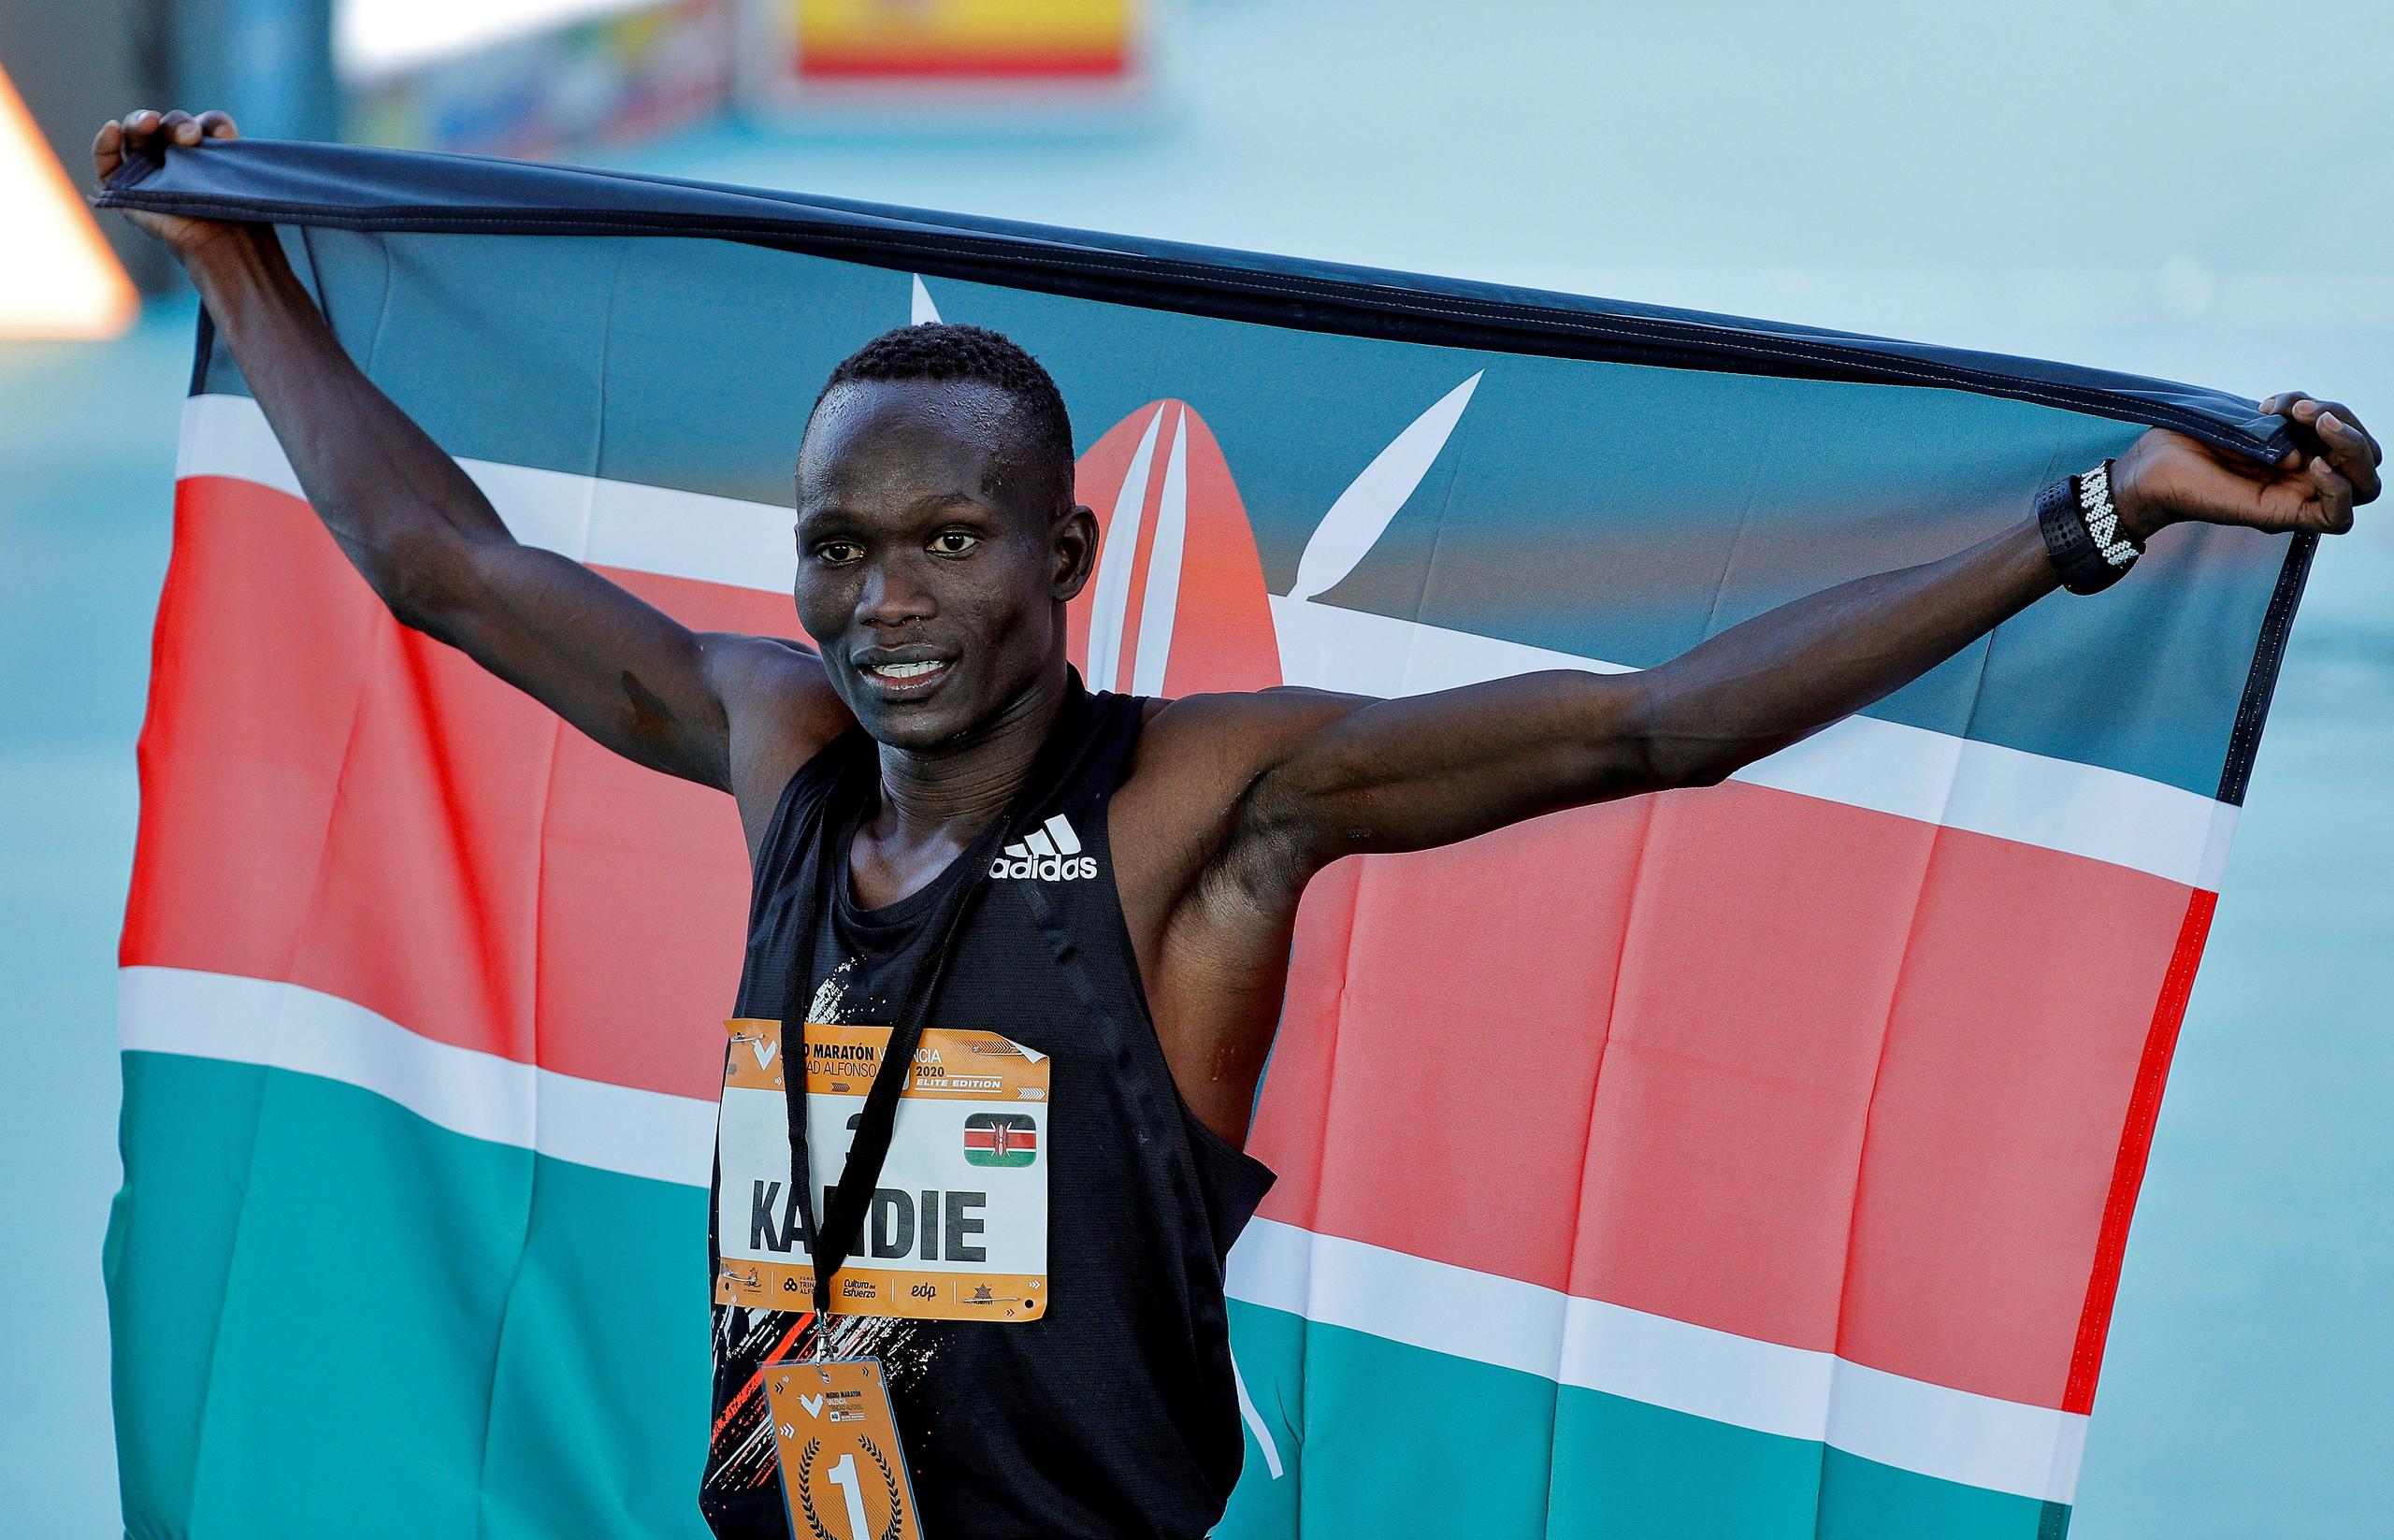 El atleta keniata Kibiwott Kandie destrozó el récord del nundo en la Medio Maratón de Valencia con un tiempo oficioso de 57:32 minutos, rebajando en casi medio minuto la plusmarca de su compatriota Geoffrey Kamworor (58:01) que ostentaba desde septiembre de 2019.